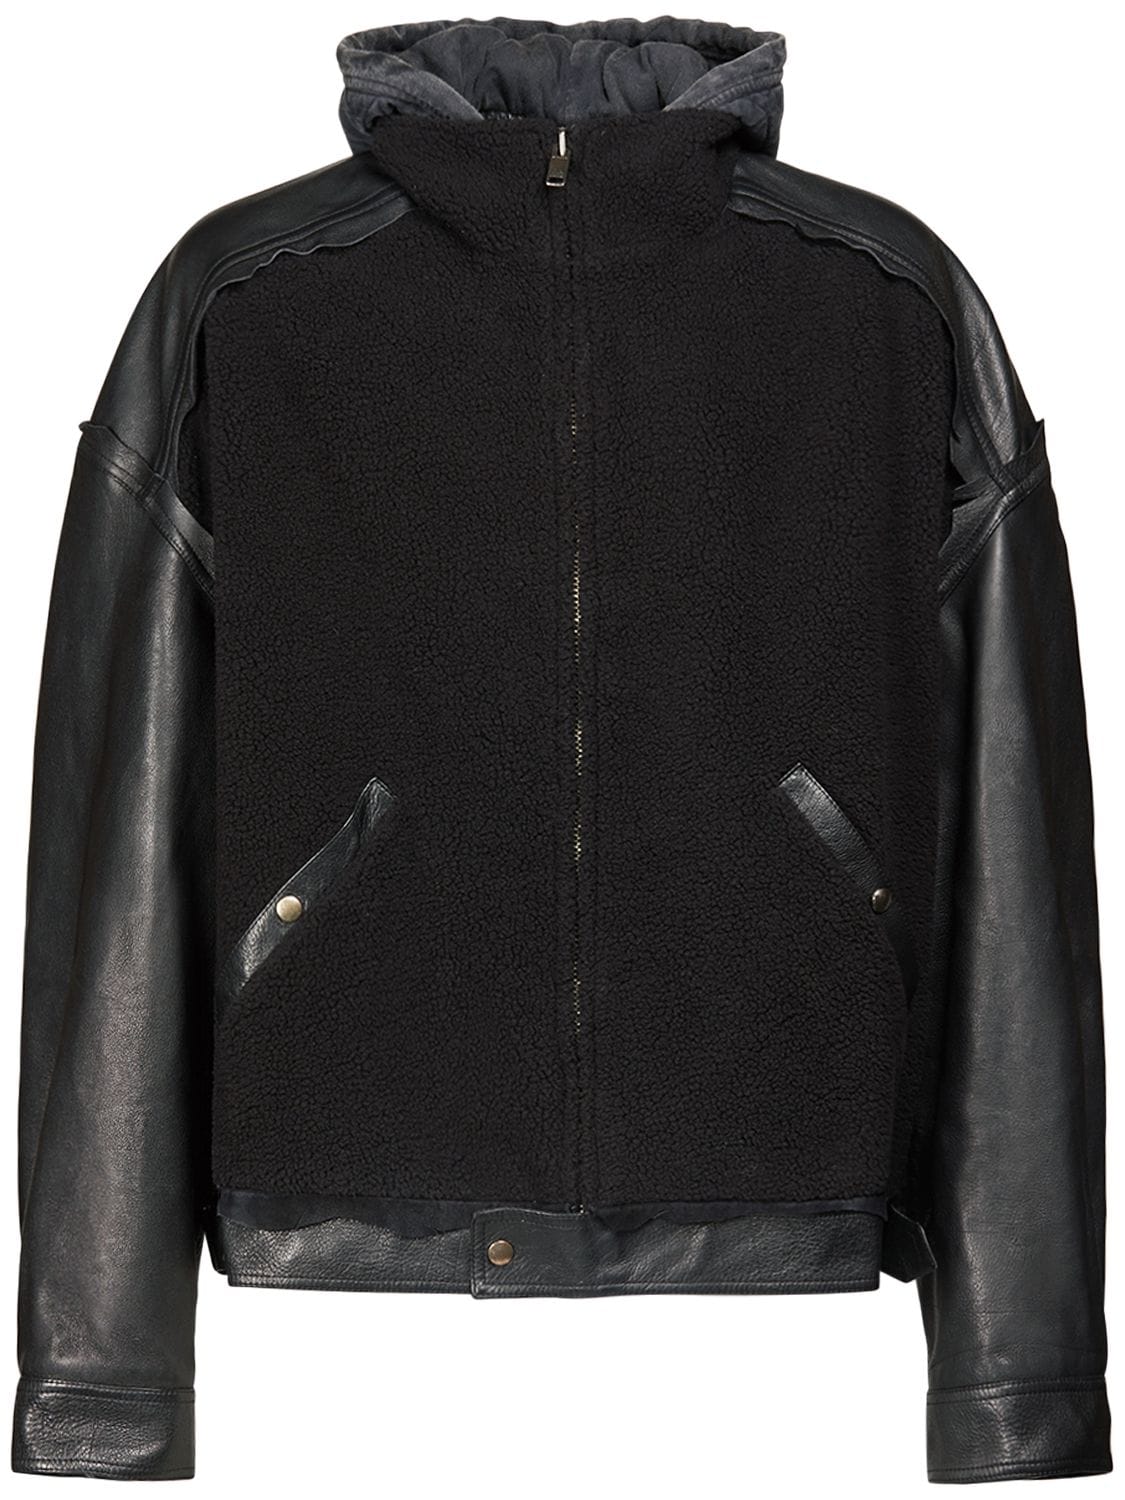 Hooded Leather Jacket – MEN > CLOTHING > JACKETS